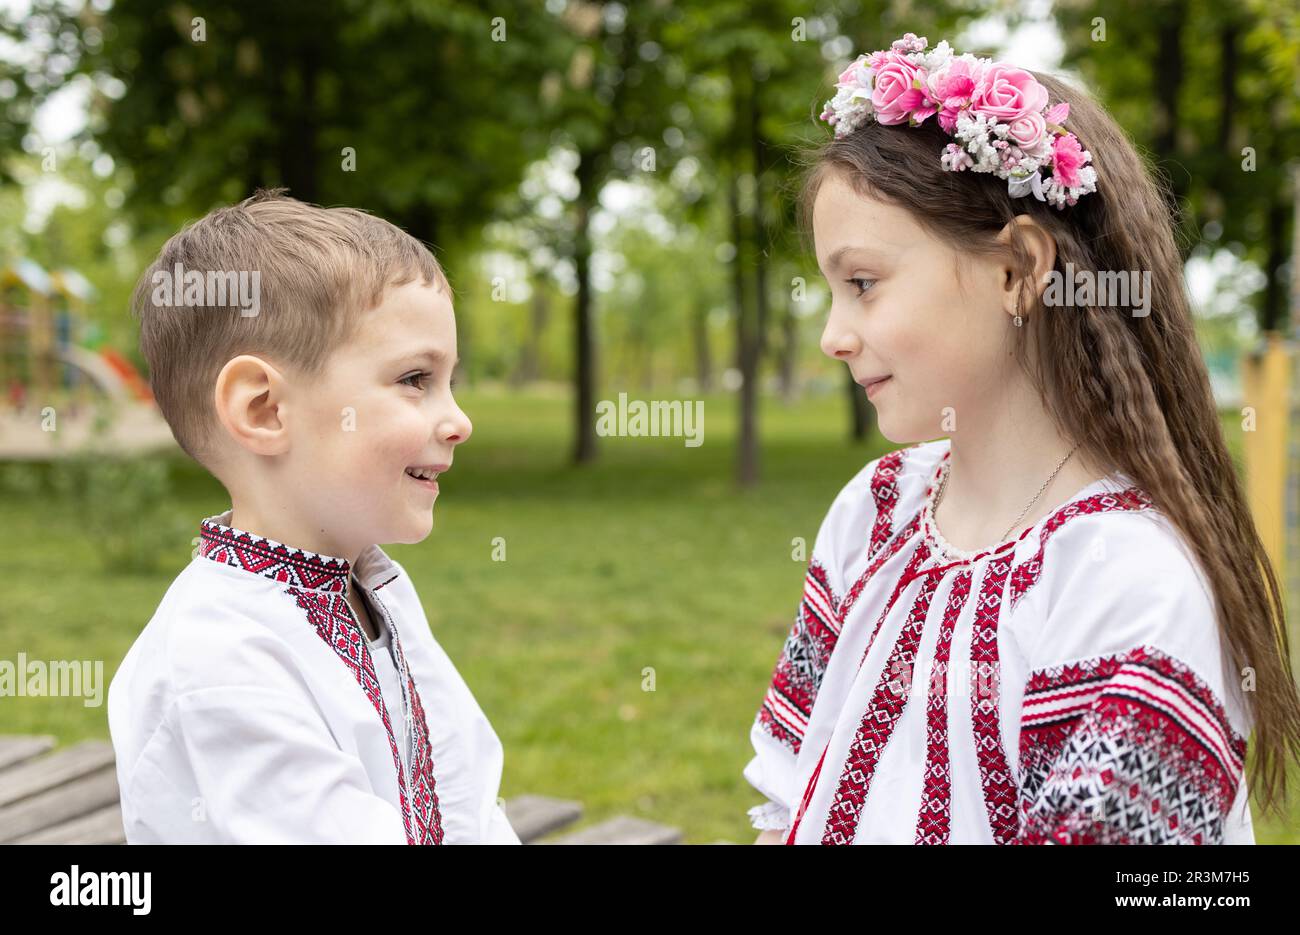 Ein jüngerer ukrainischer Junge und ein älteres Mädchen, Bruder und Schwester, in bestickter nationaler ukrainischer Kleidung, seht euch an Stockfoto